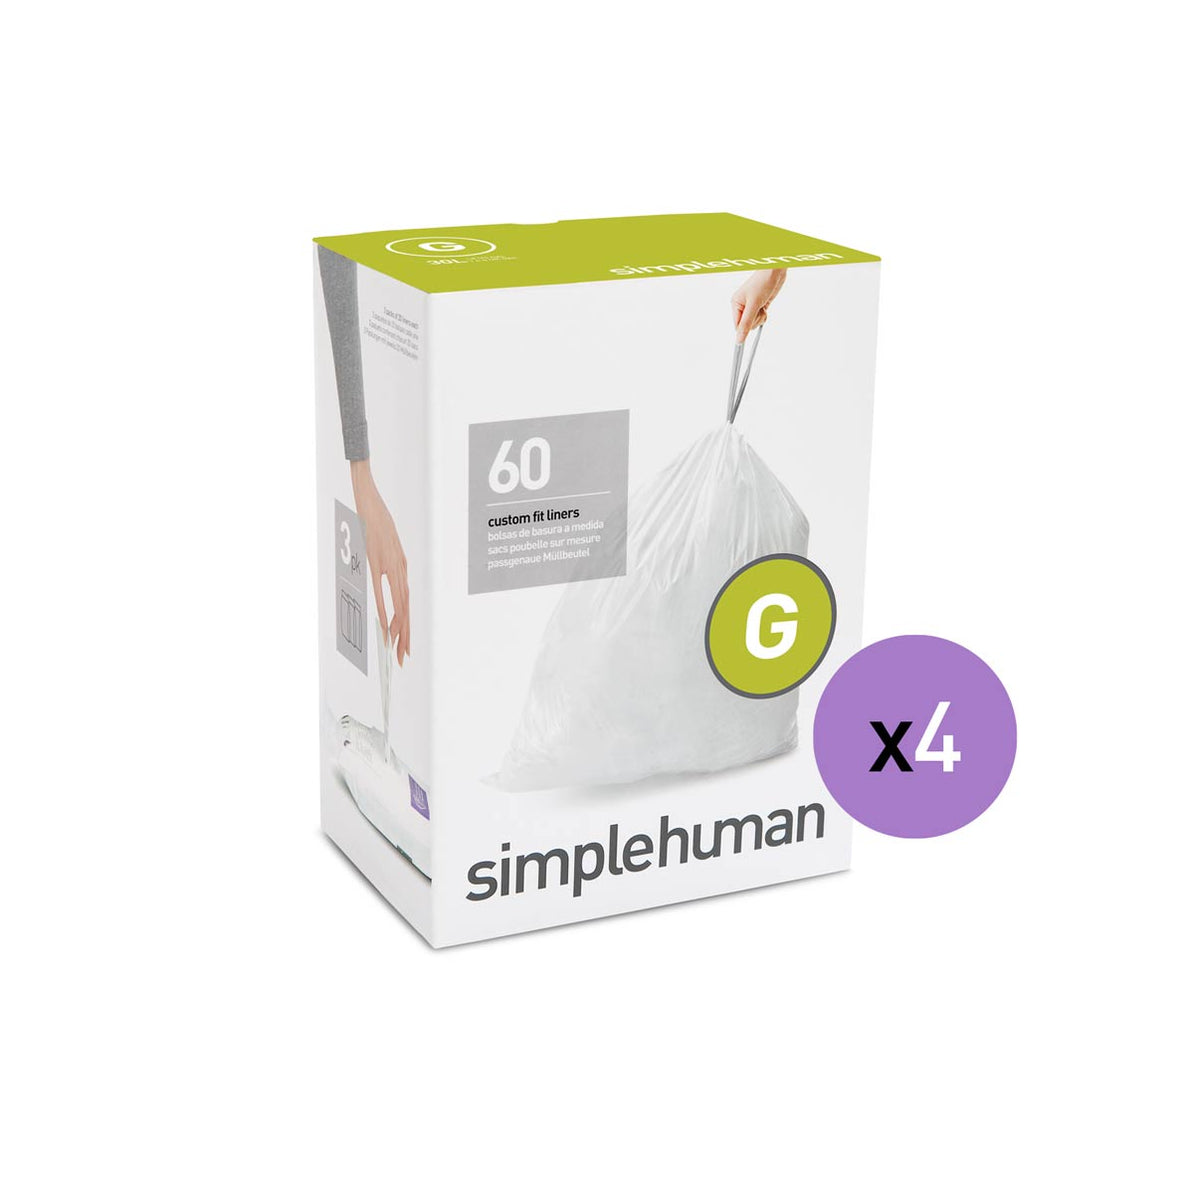 買物 simplehuman シンプルヒューマン 専用ゴミ袋 カスタムフィットライナー M 00161 4Pセット キャンセル不可 